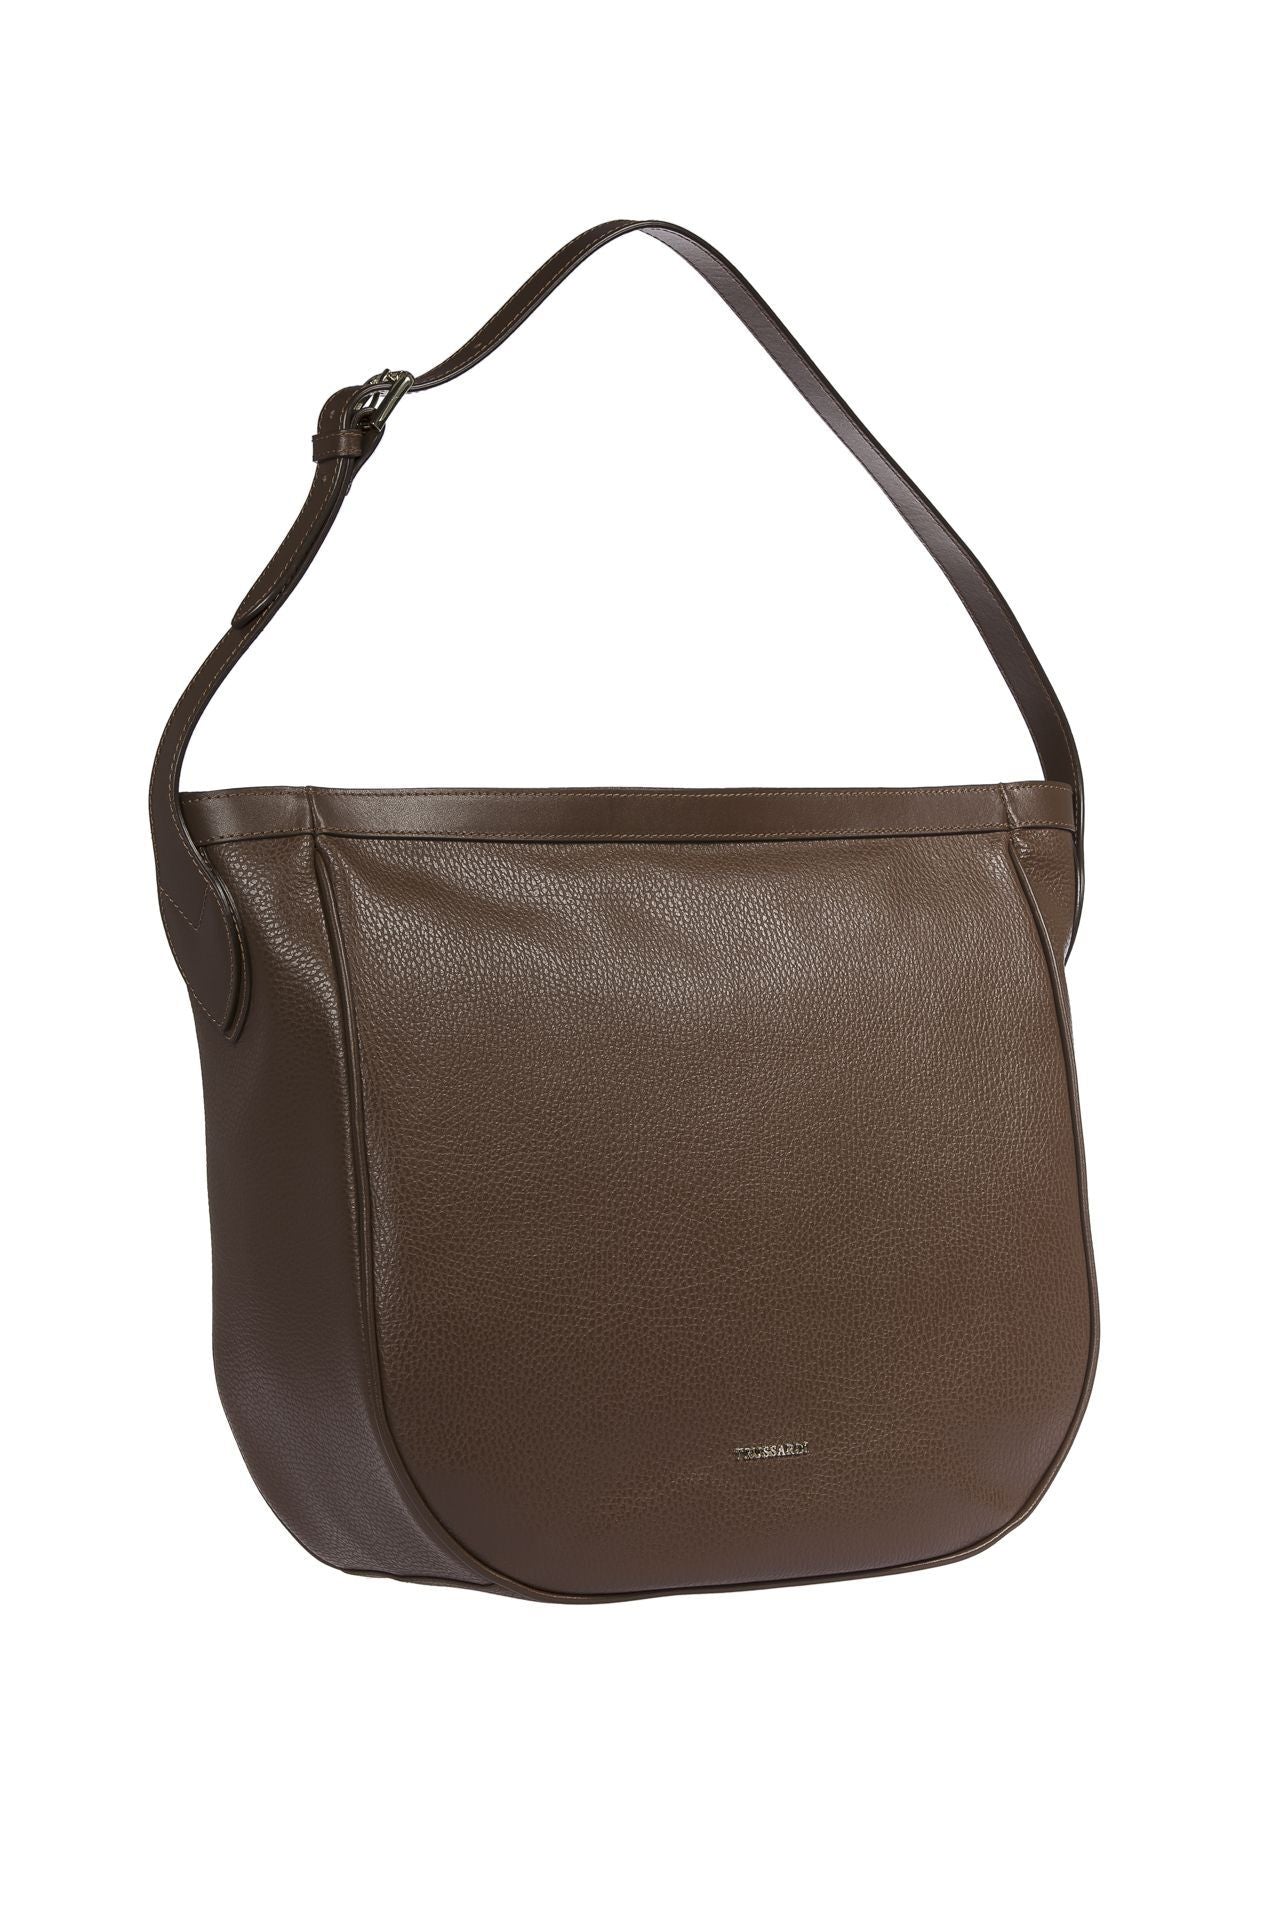 Trussardi Brown Leather Shoulder Bag